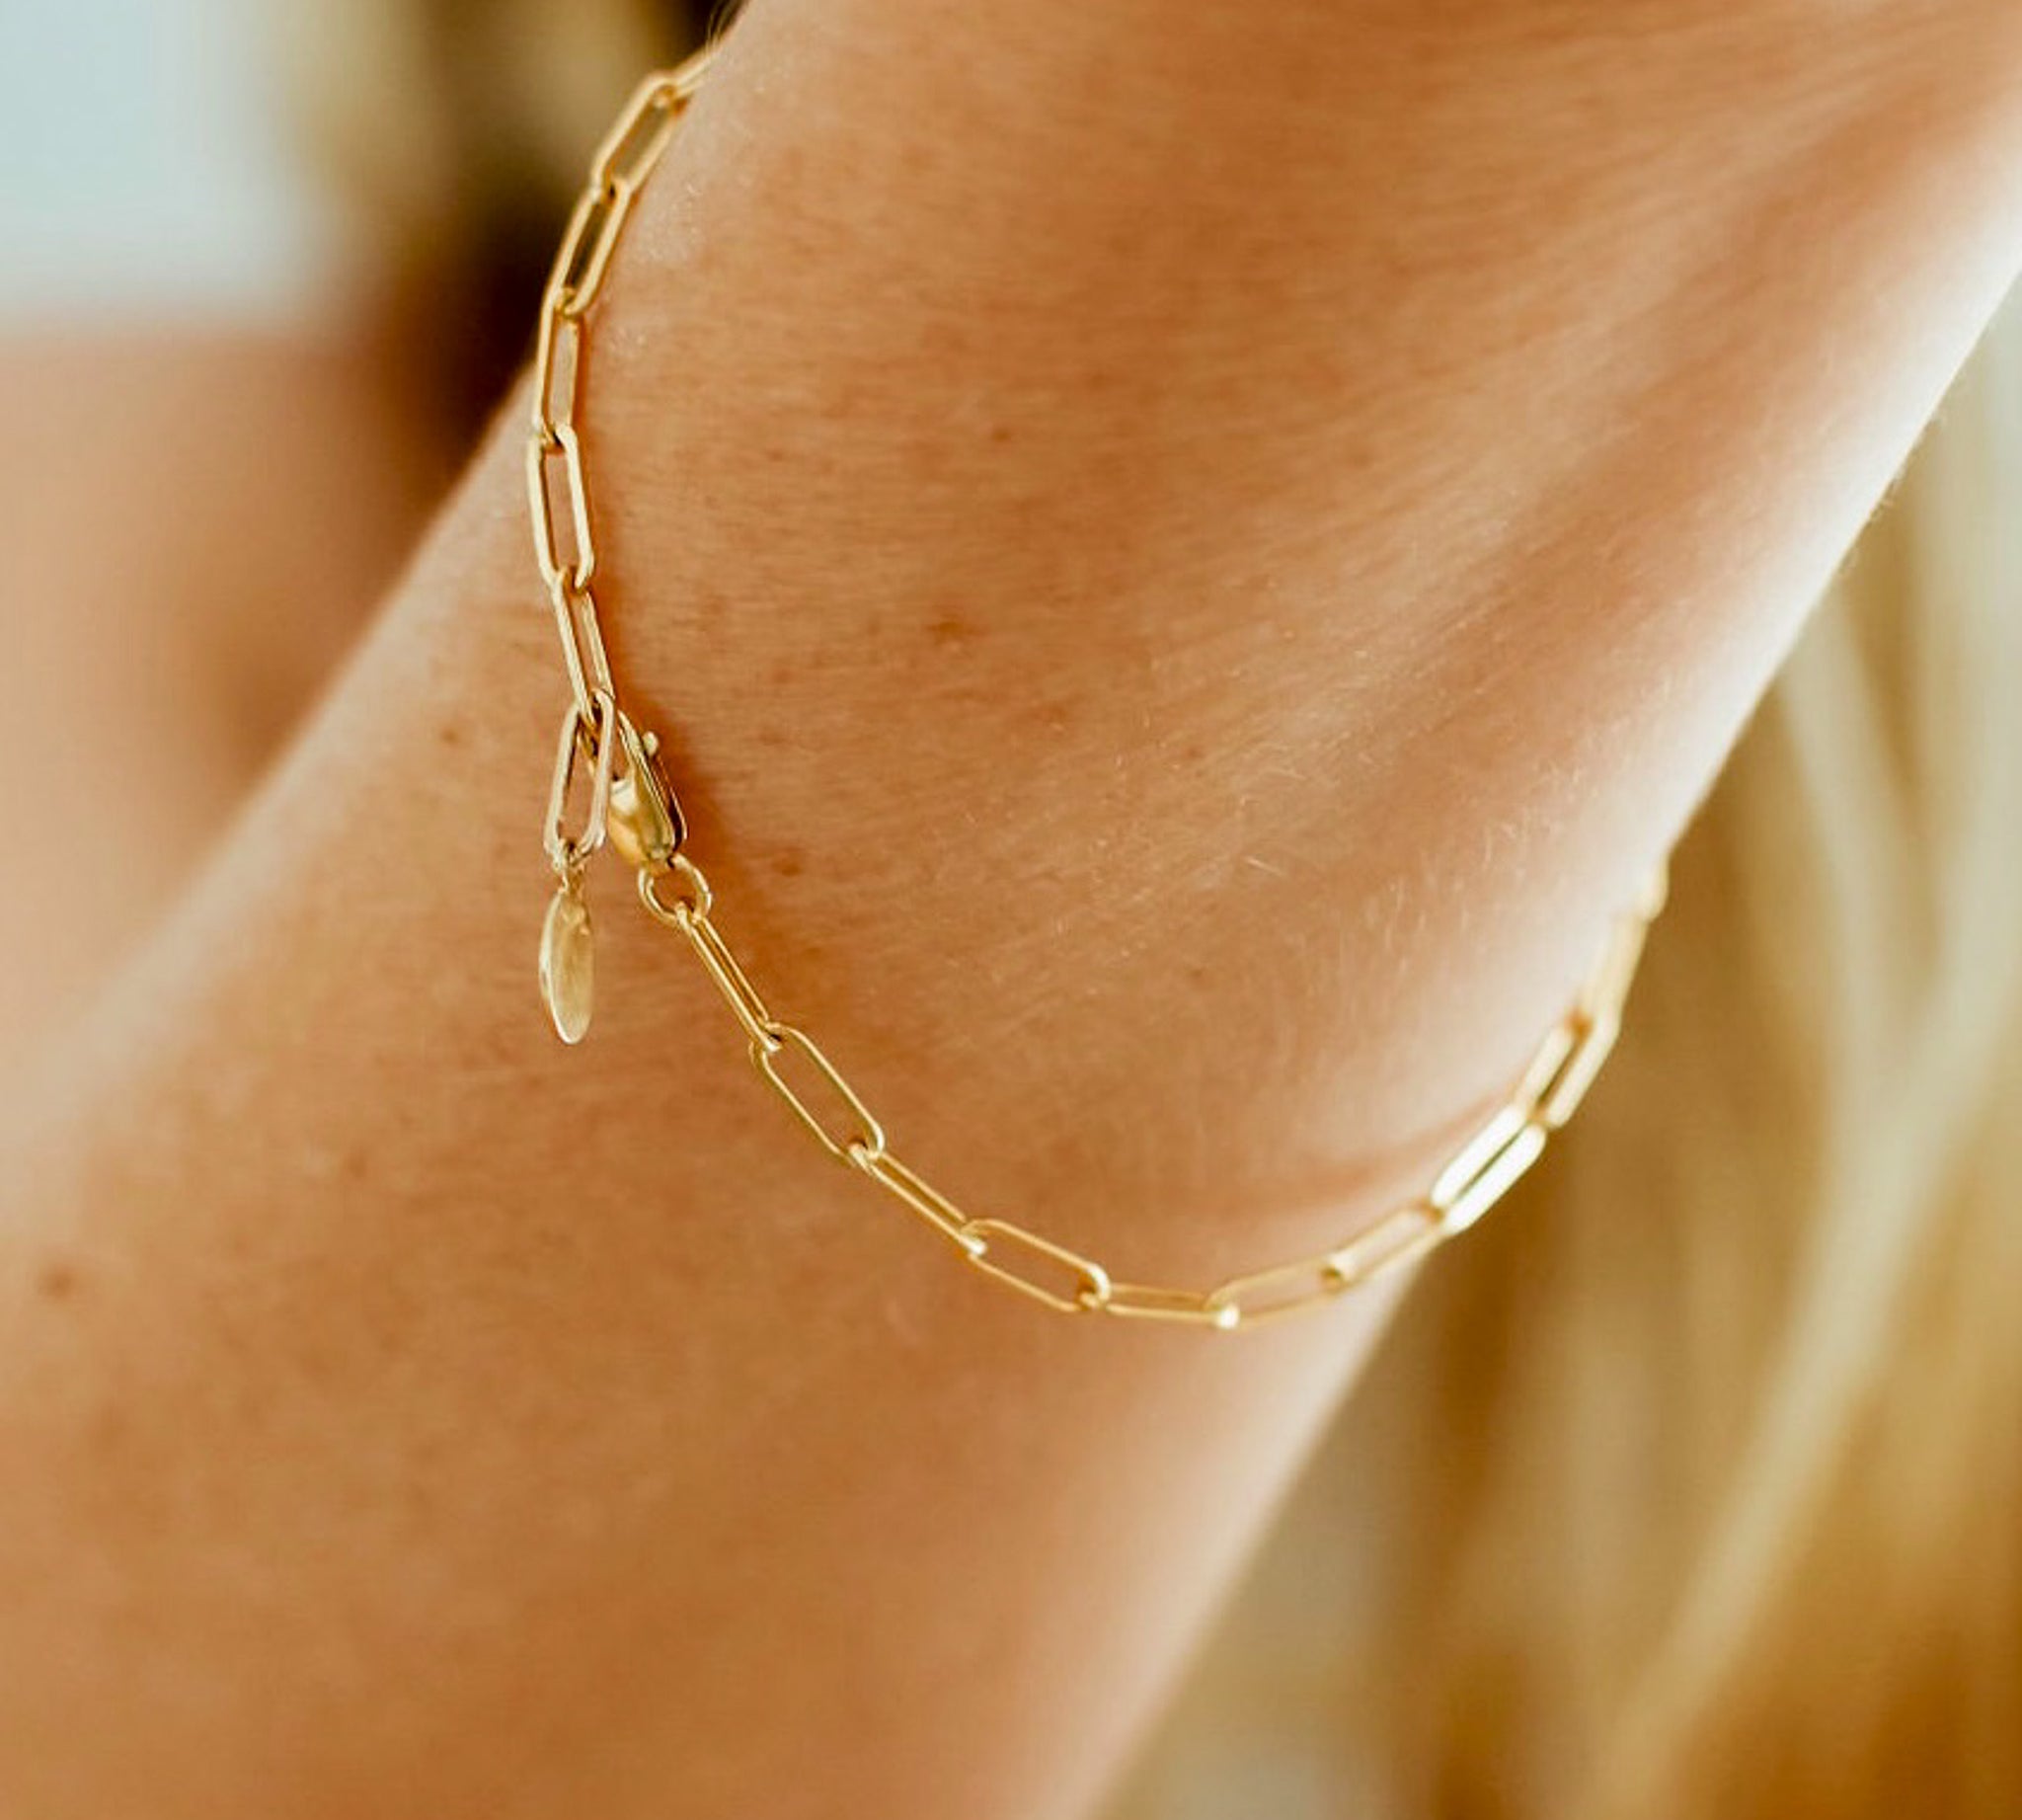 Charming Link Chain Bracelet, shown on model